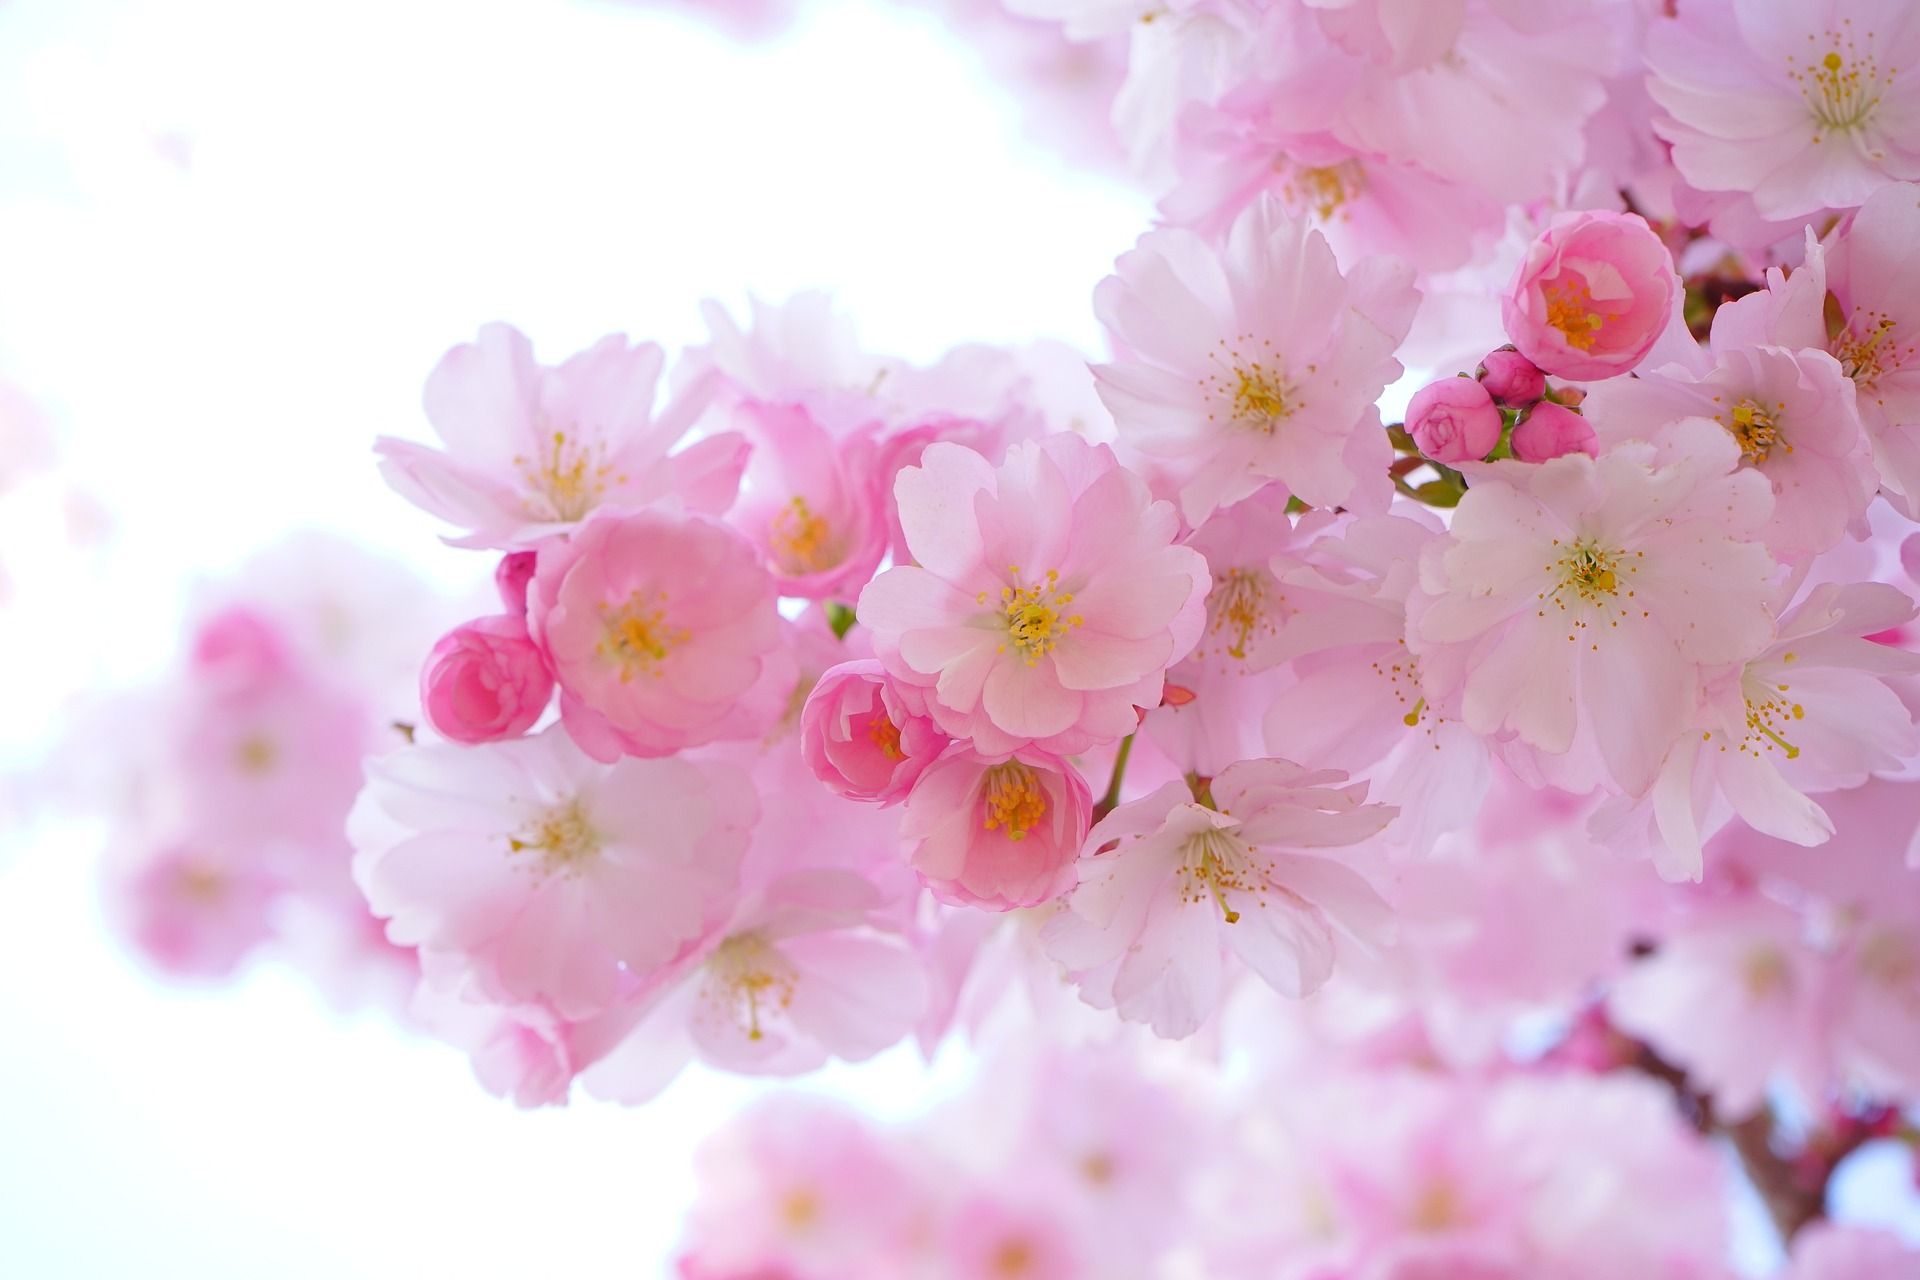 Merkmale von Hochsensibilität Zweige mit vielen zarten, rosa Kirschblüten Christine Kiunke Deine leise Art ist ein Geschenk